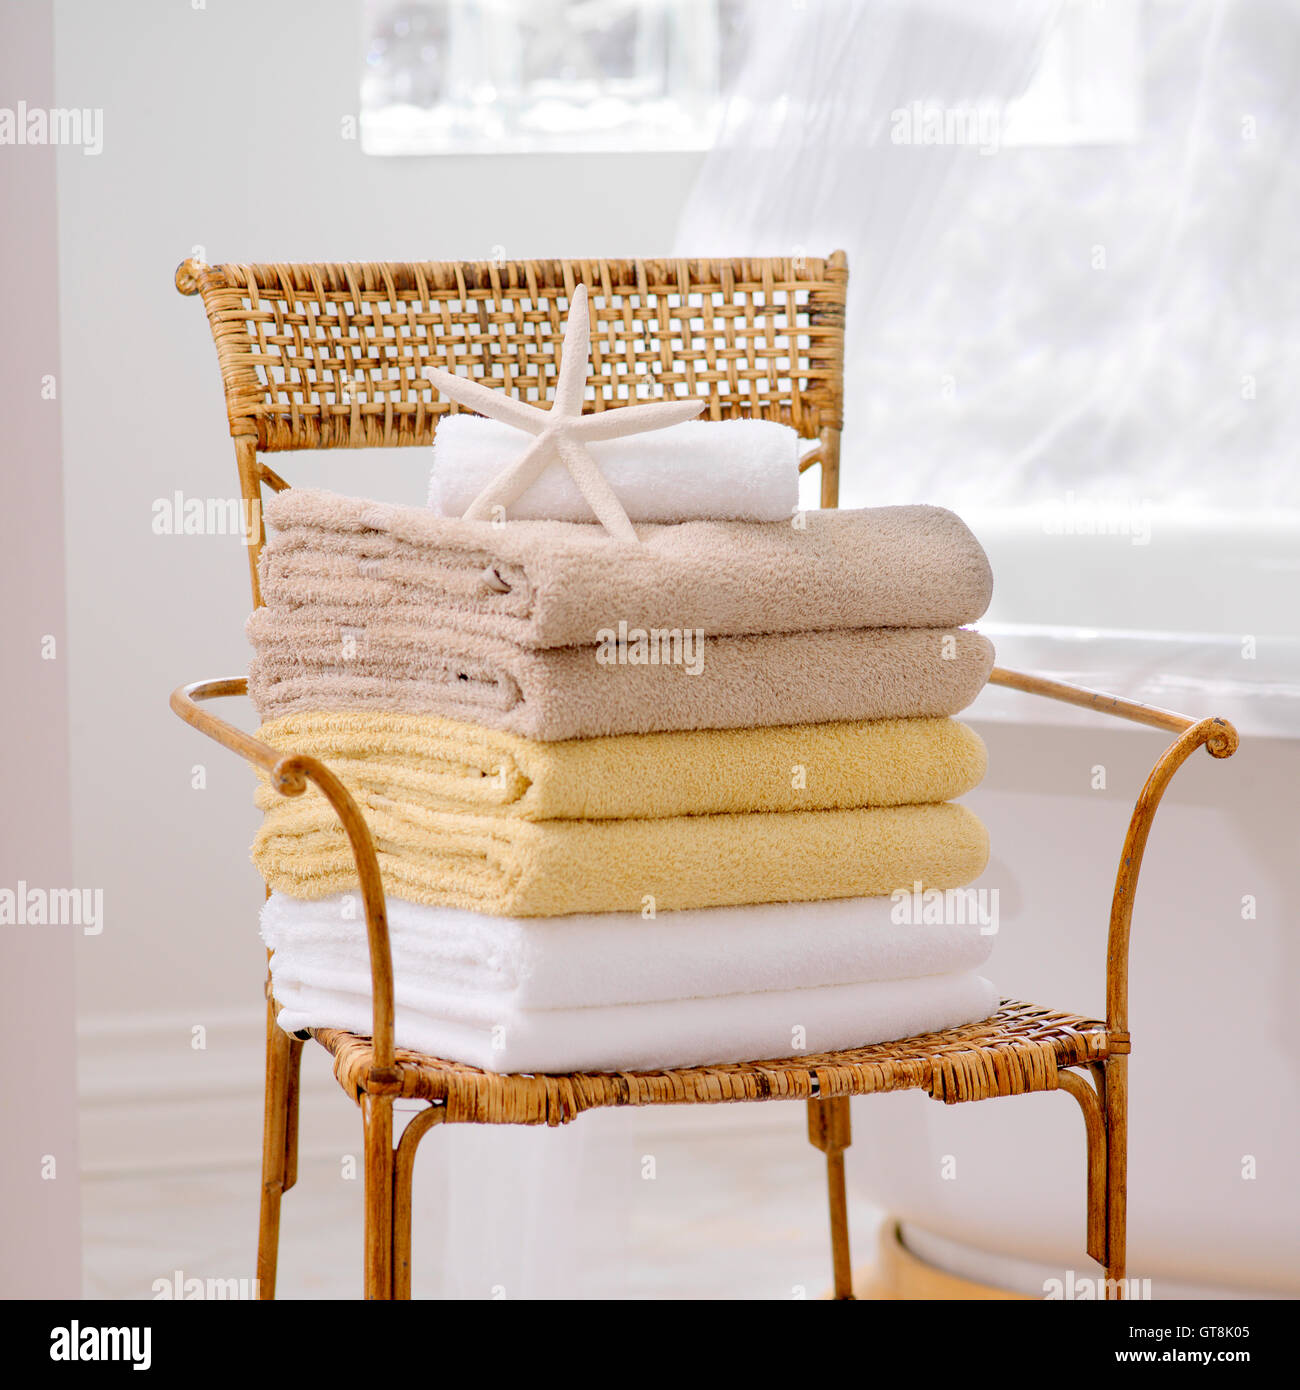 Stapel von frischen Handtüchern und Seestern auf Korbstuhl in Bad Stockfoto